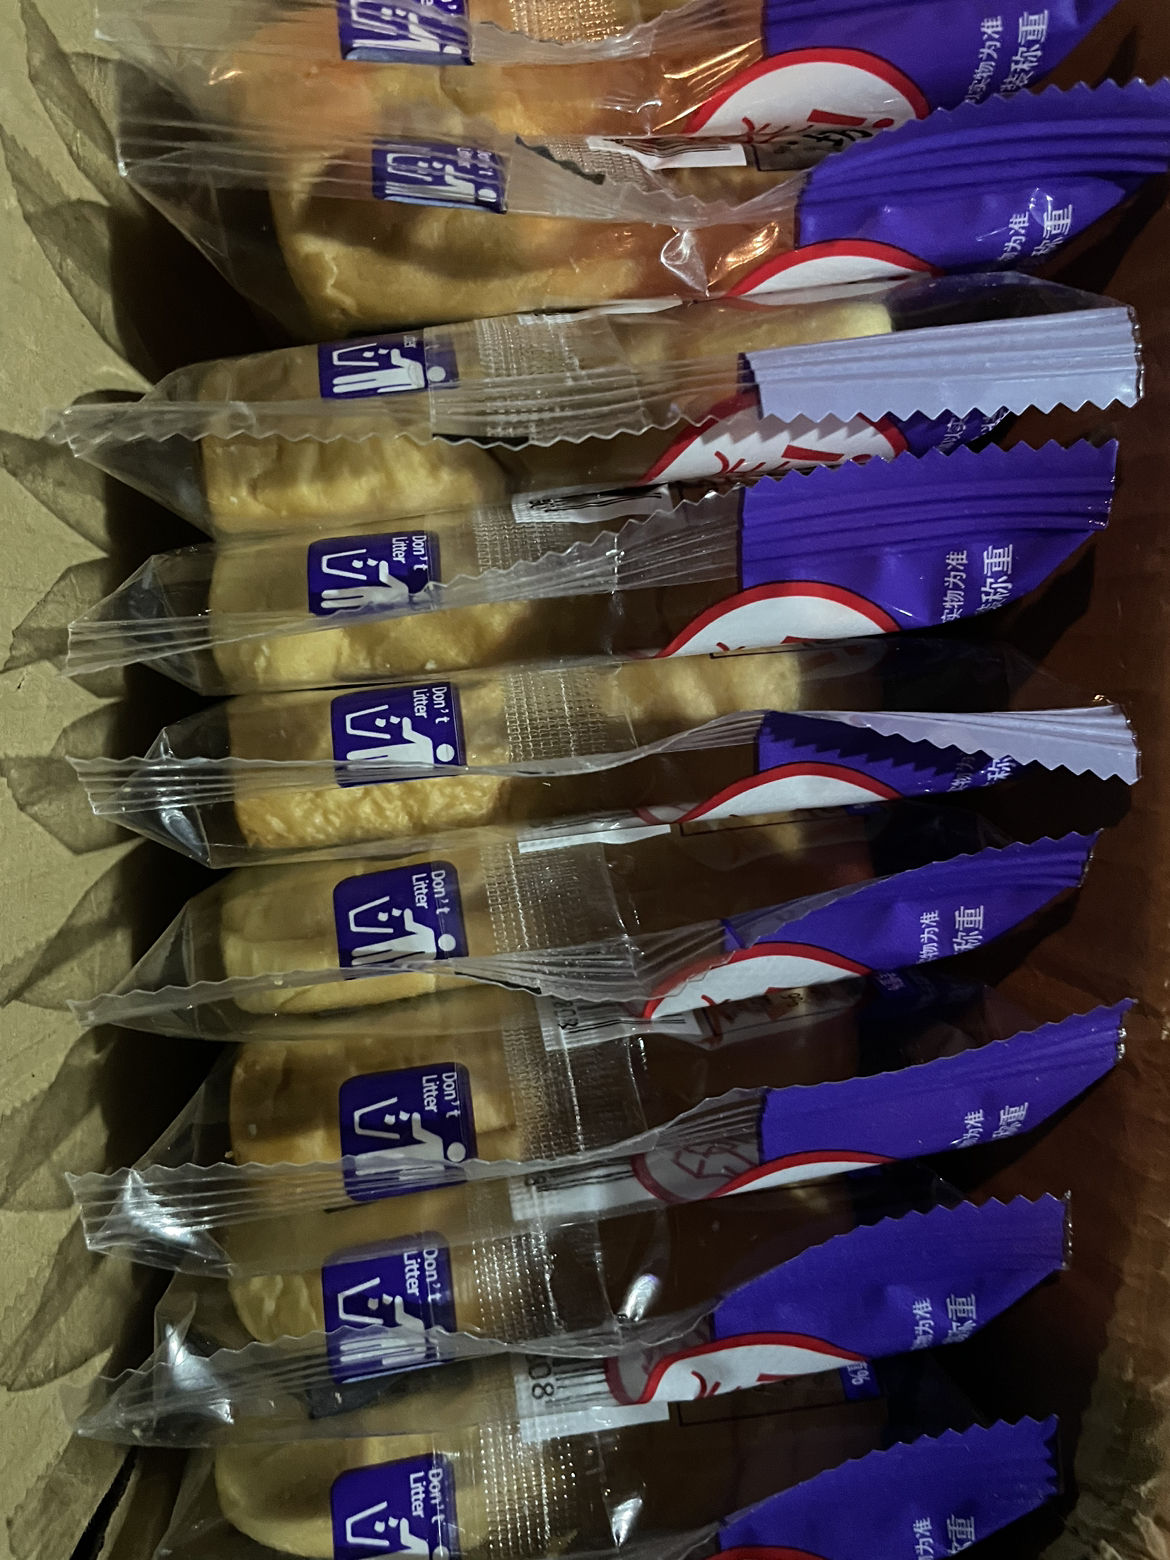 兰象岩蓝莓味吐司500g夹心双层面包办公室零食点心营养早餐独立包装面包晒单图